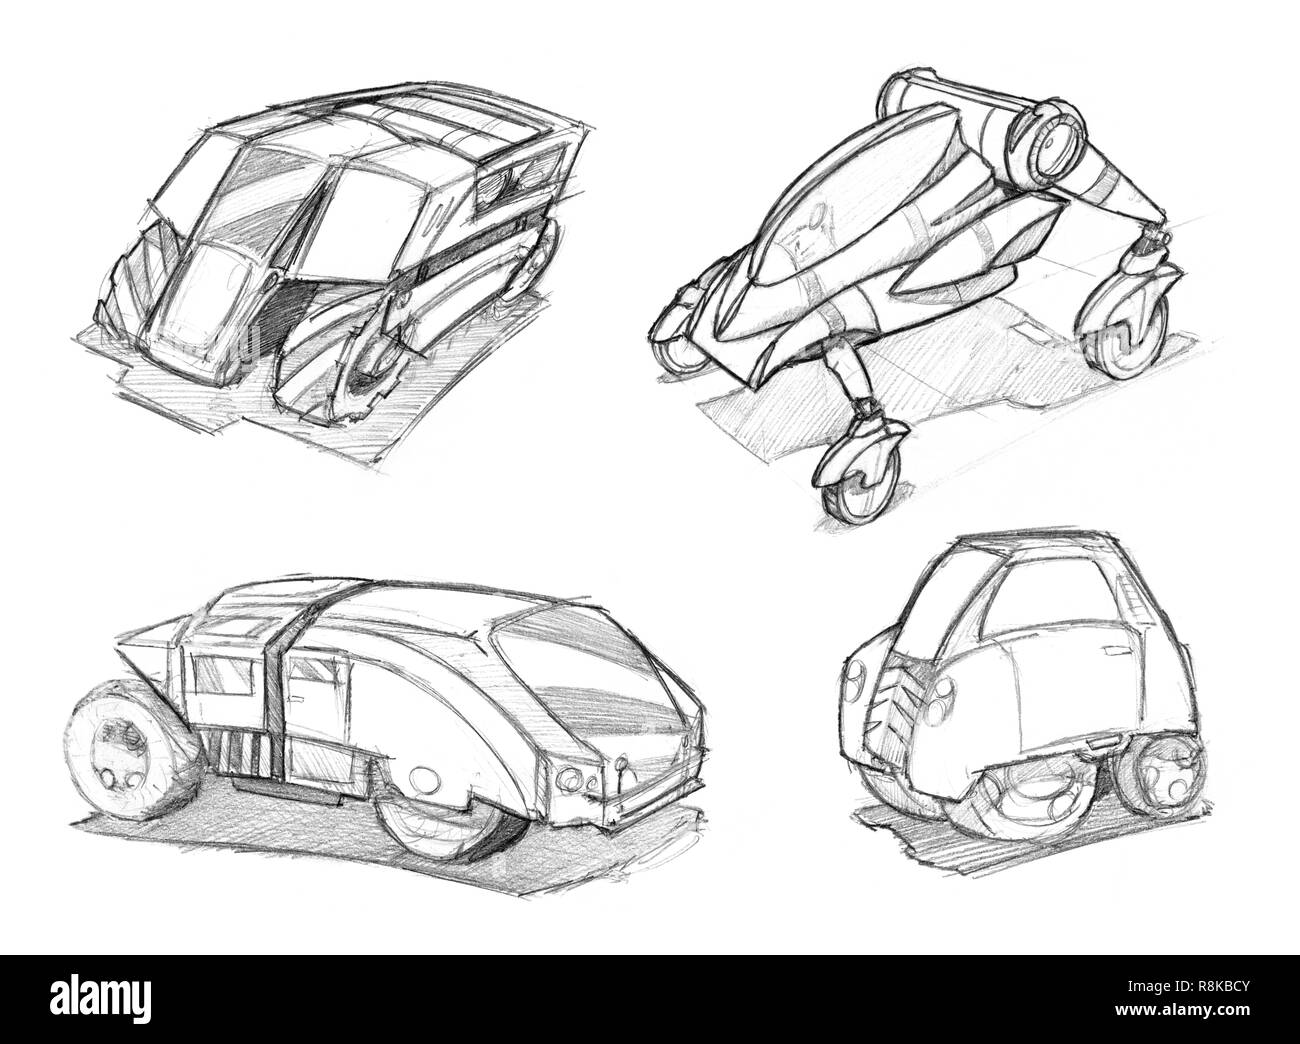 Bleistift Konzept Kunst Zeichnung der Satz von futuristischen Sci-Fi-Automotive Car Designs Stockfoto